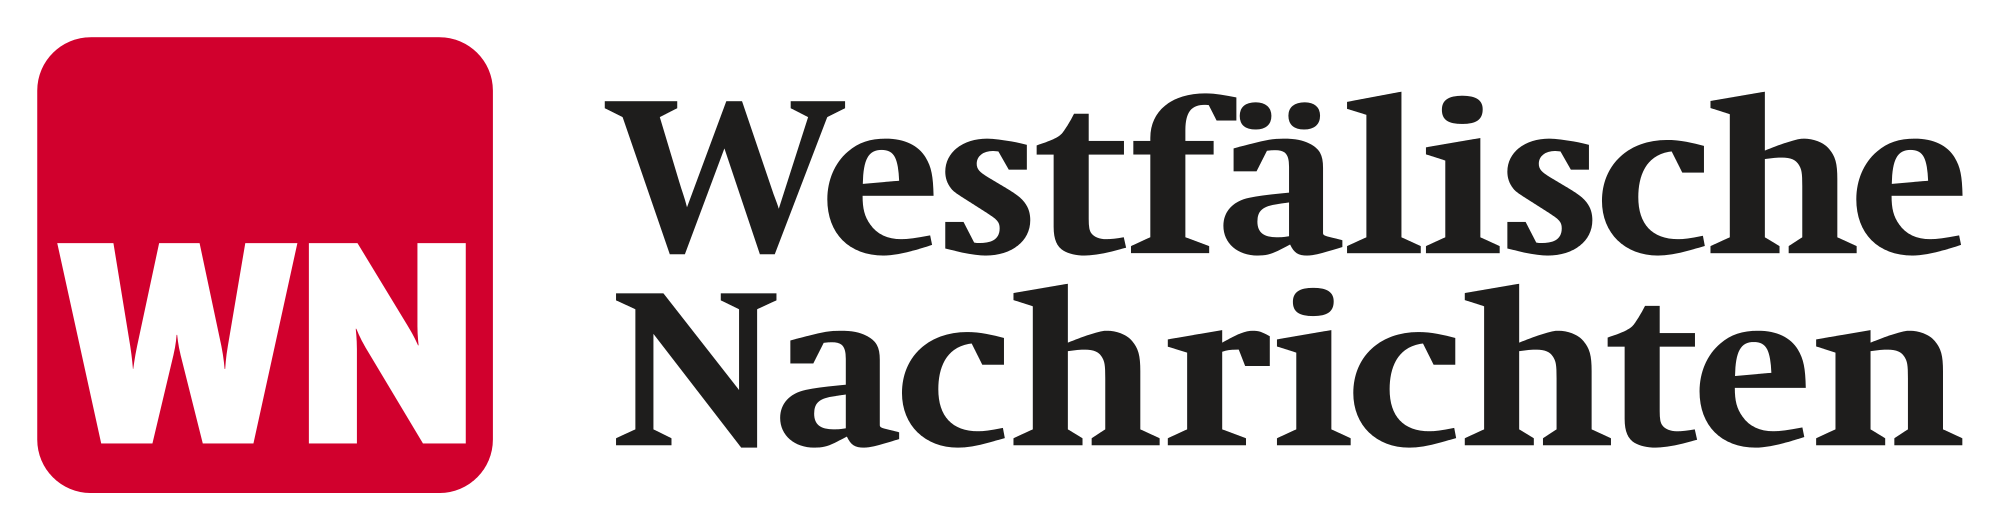 Logo Westfälische Nachrichten.svg